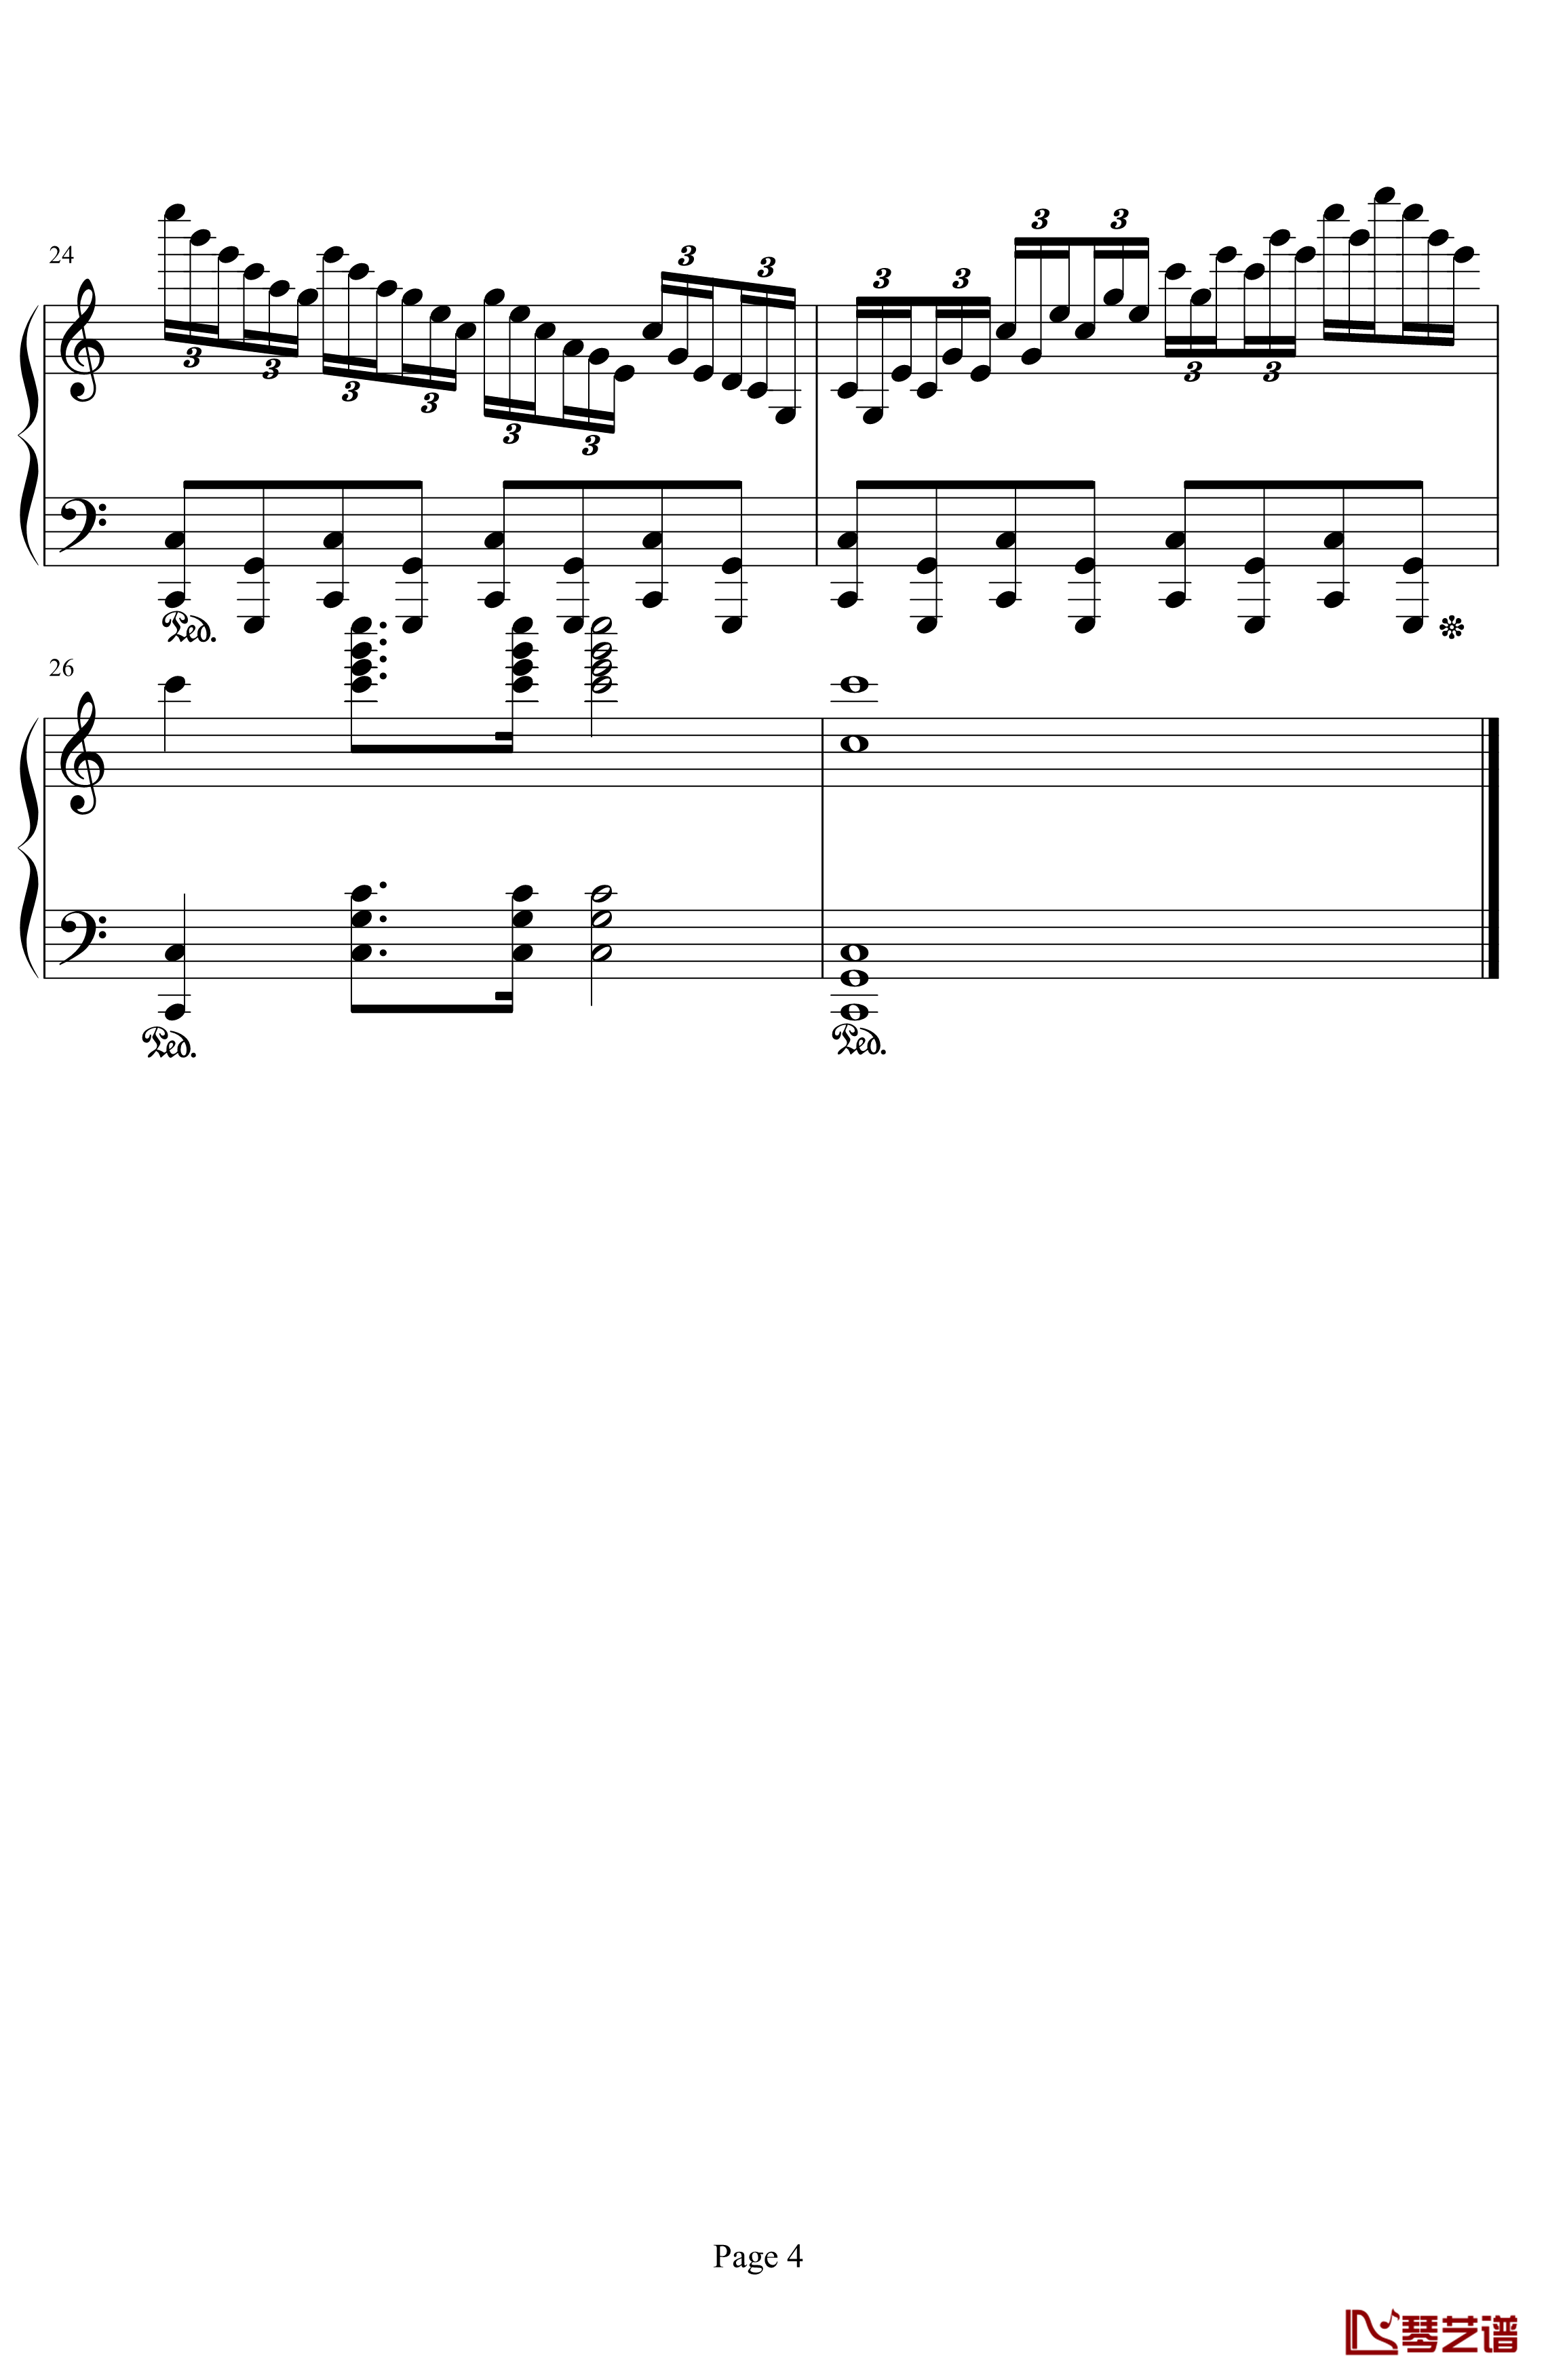 练习曲钢琴谱-peipei61112014